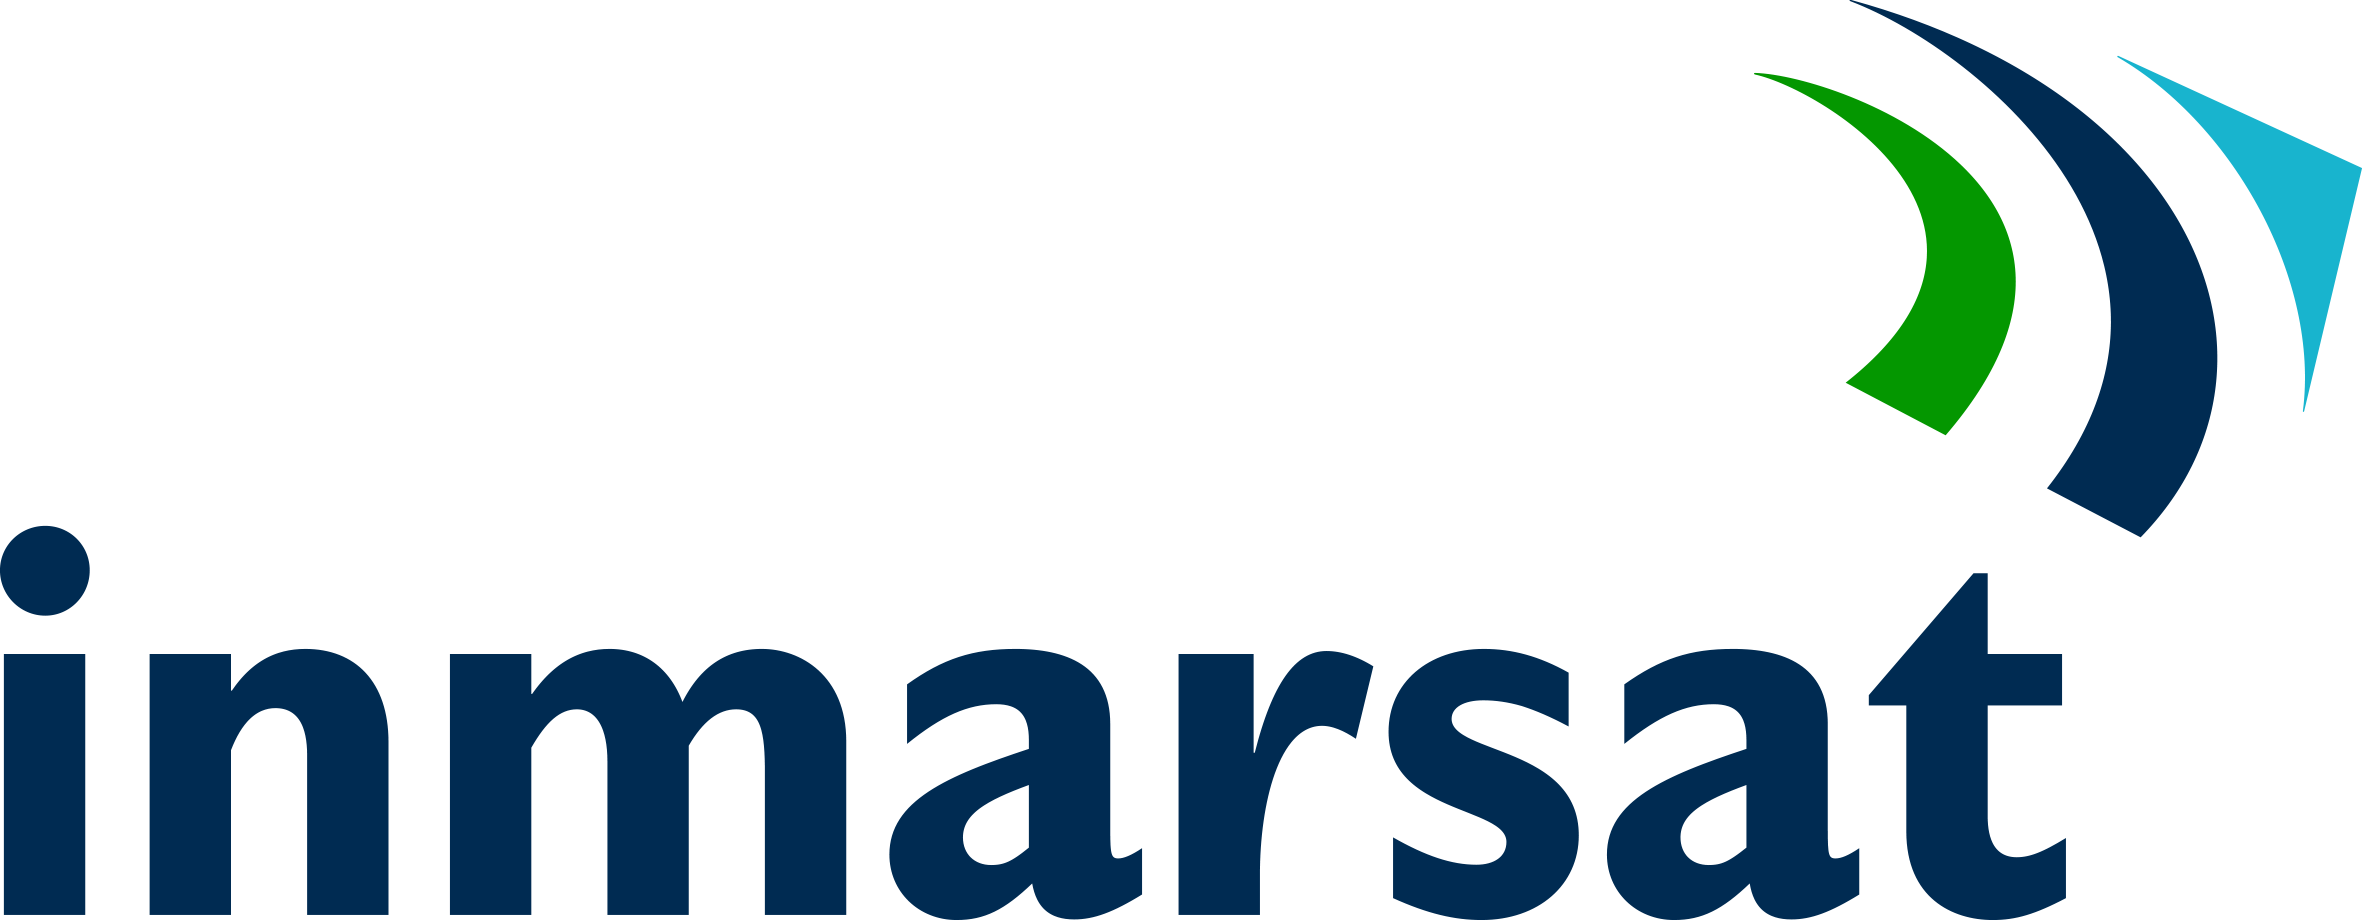 Inmarsat1